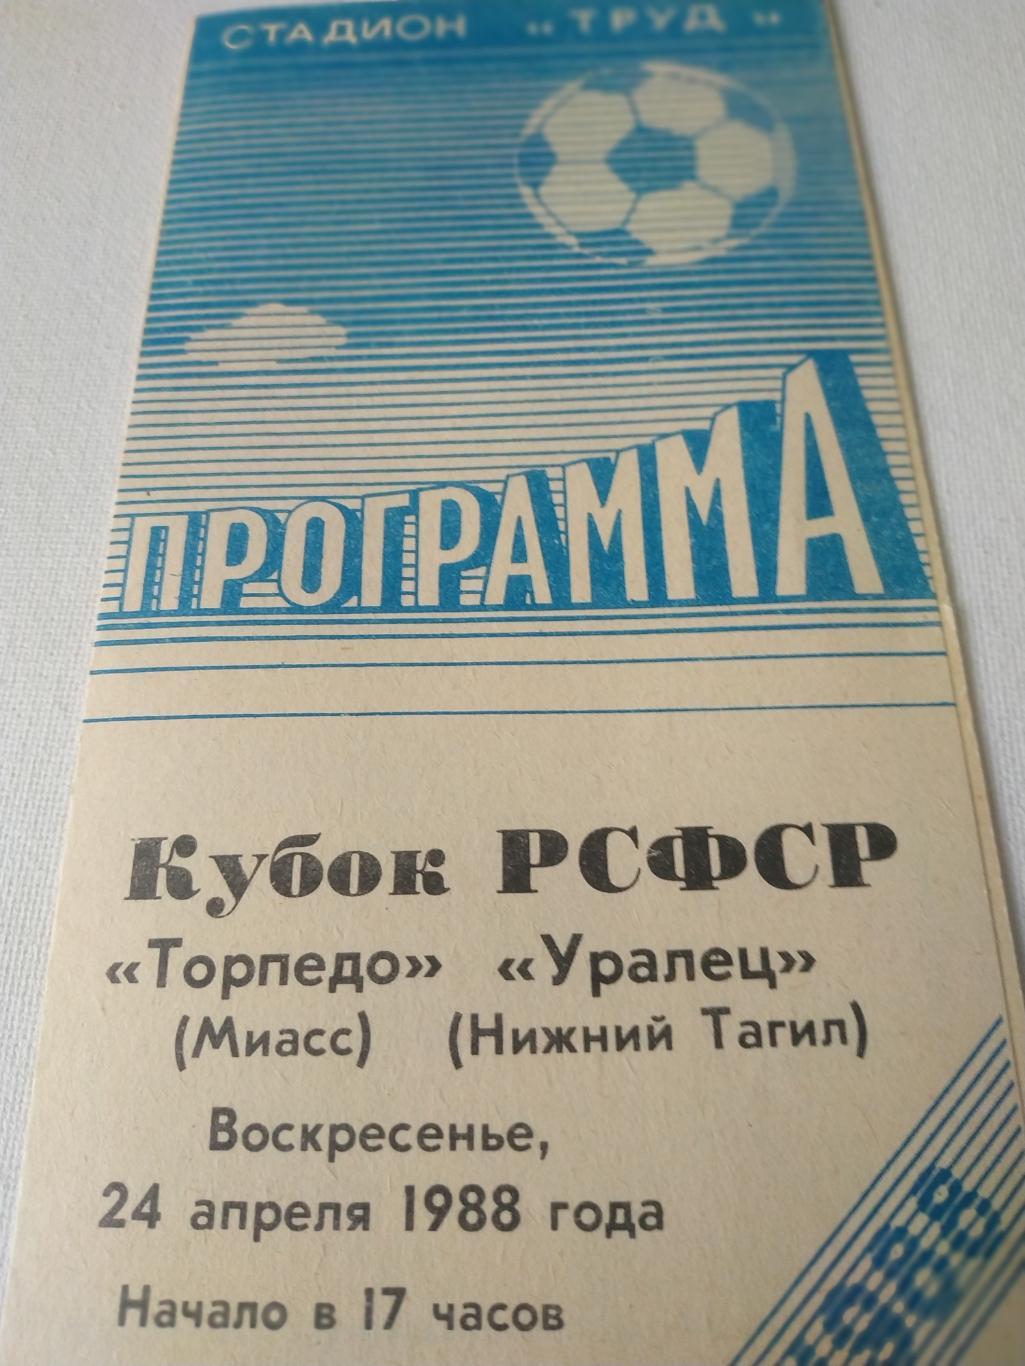 Торпедо/Миасс/ - Уралец/Нижний Тагил/ 1988 кубок РСФСР